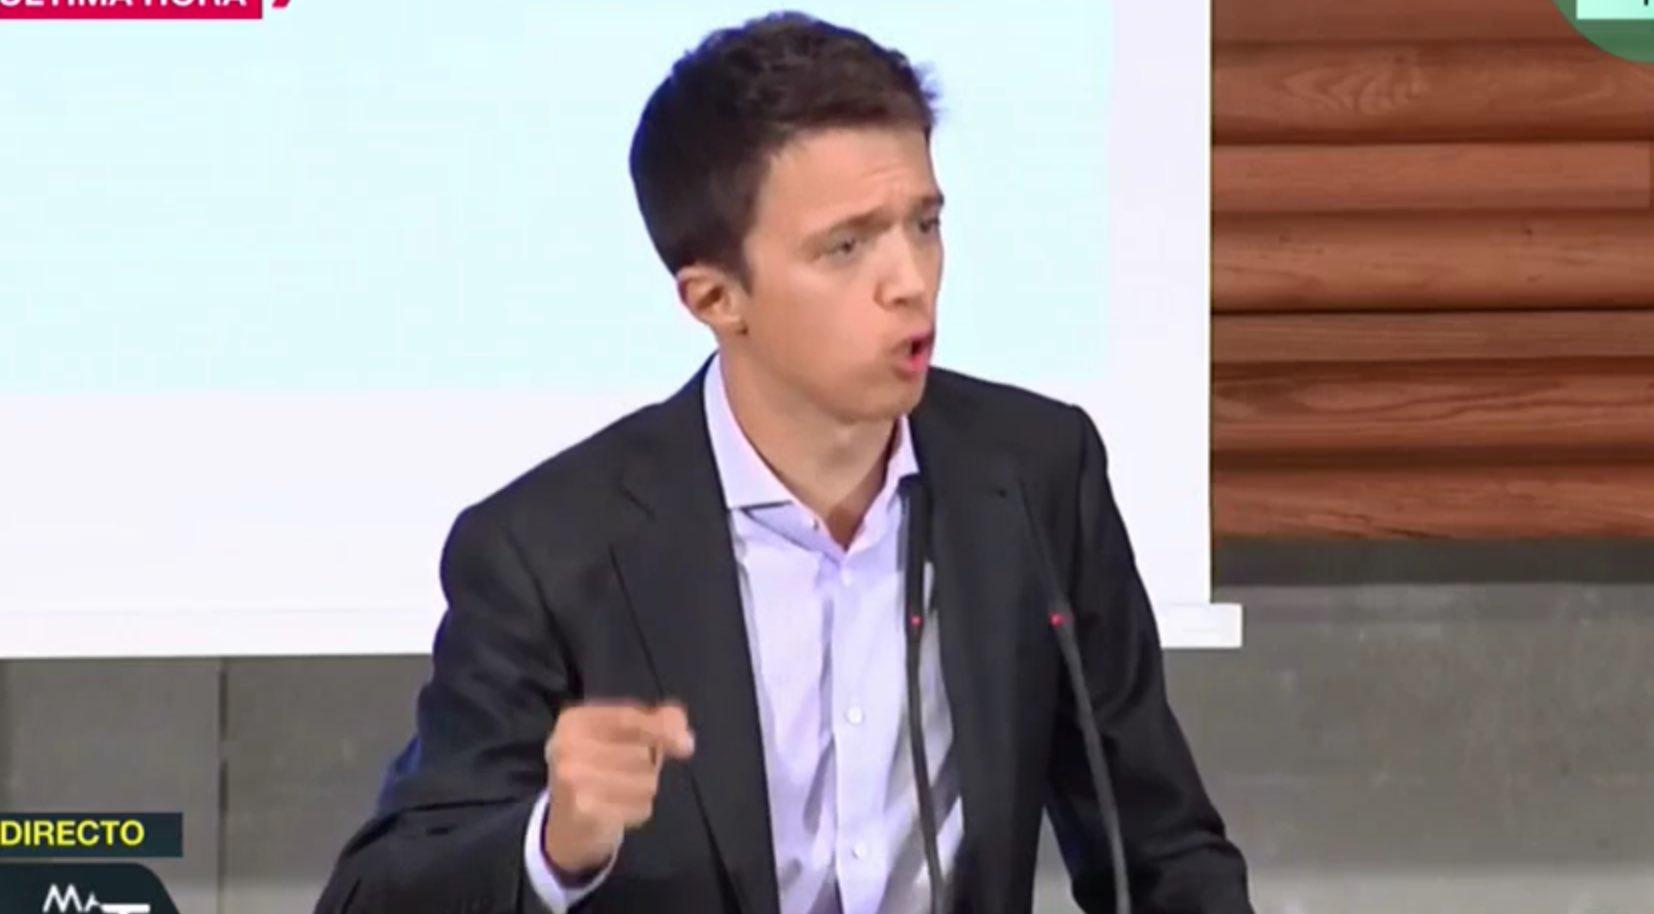 Íñigo Errejón durante su discurso en el acto de presentación en la sede de la UGT. Twitter